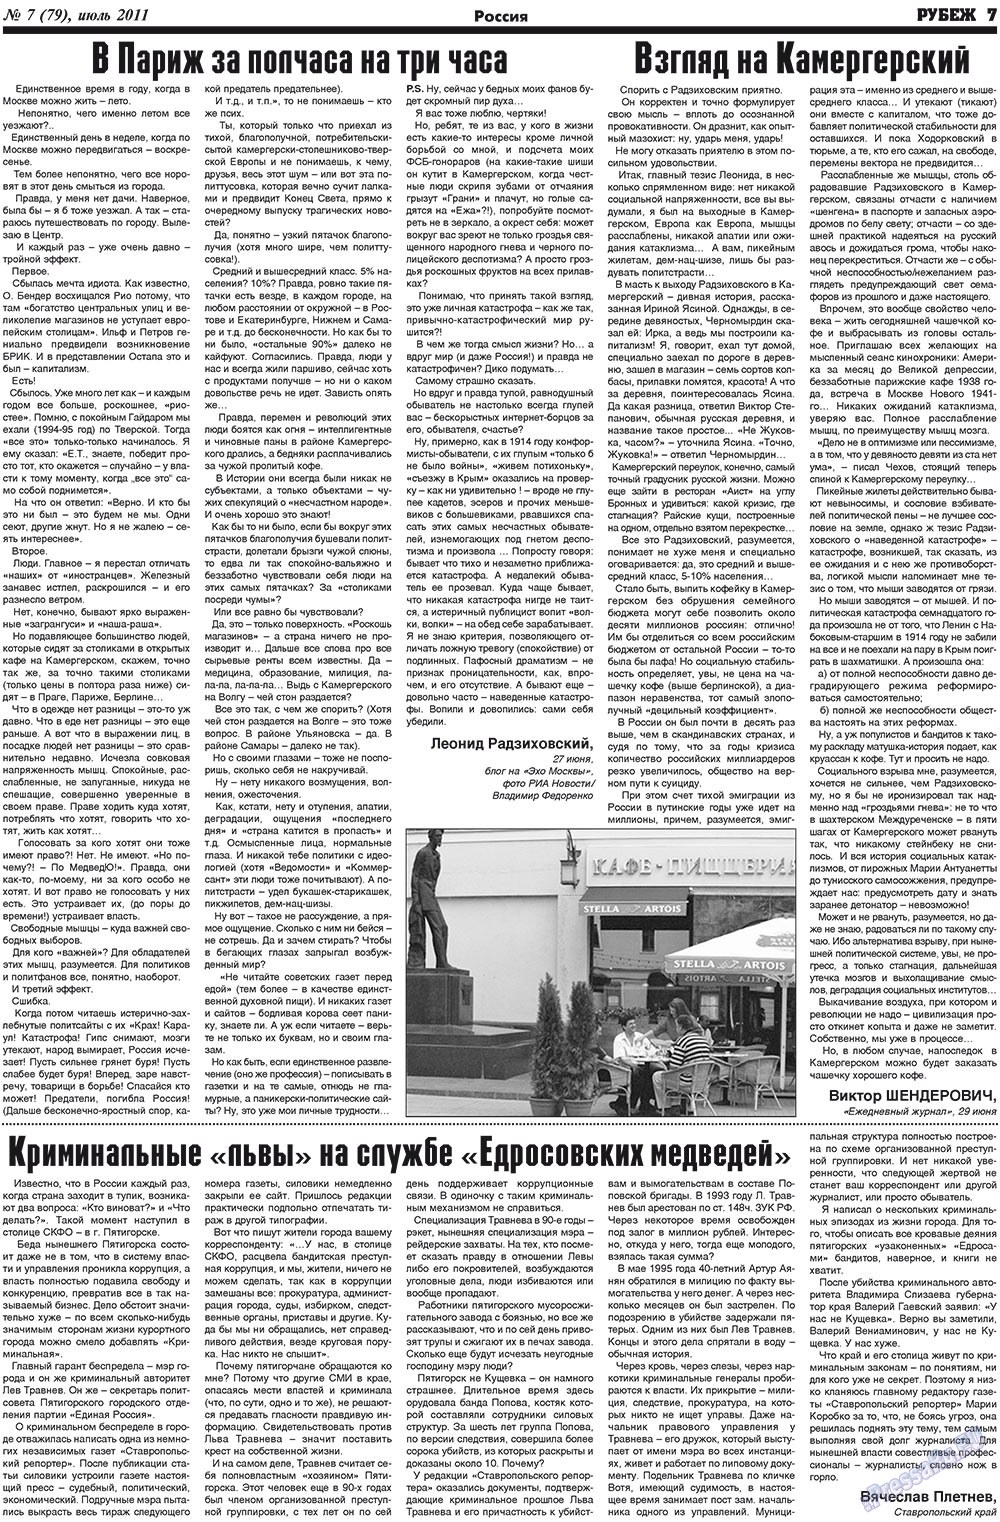 Рубеж (газета). 2011 год, номер 7, стр. 7